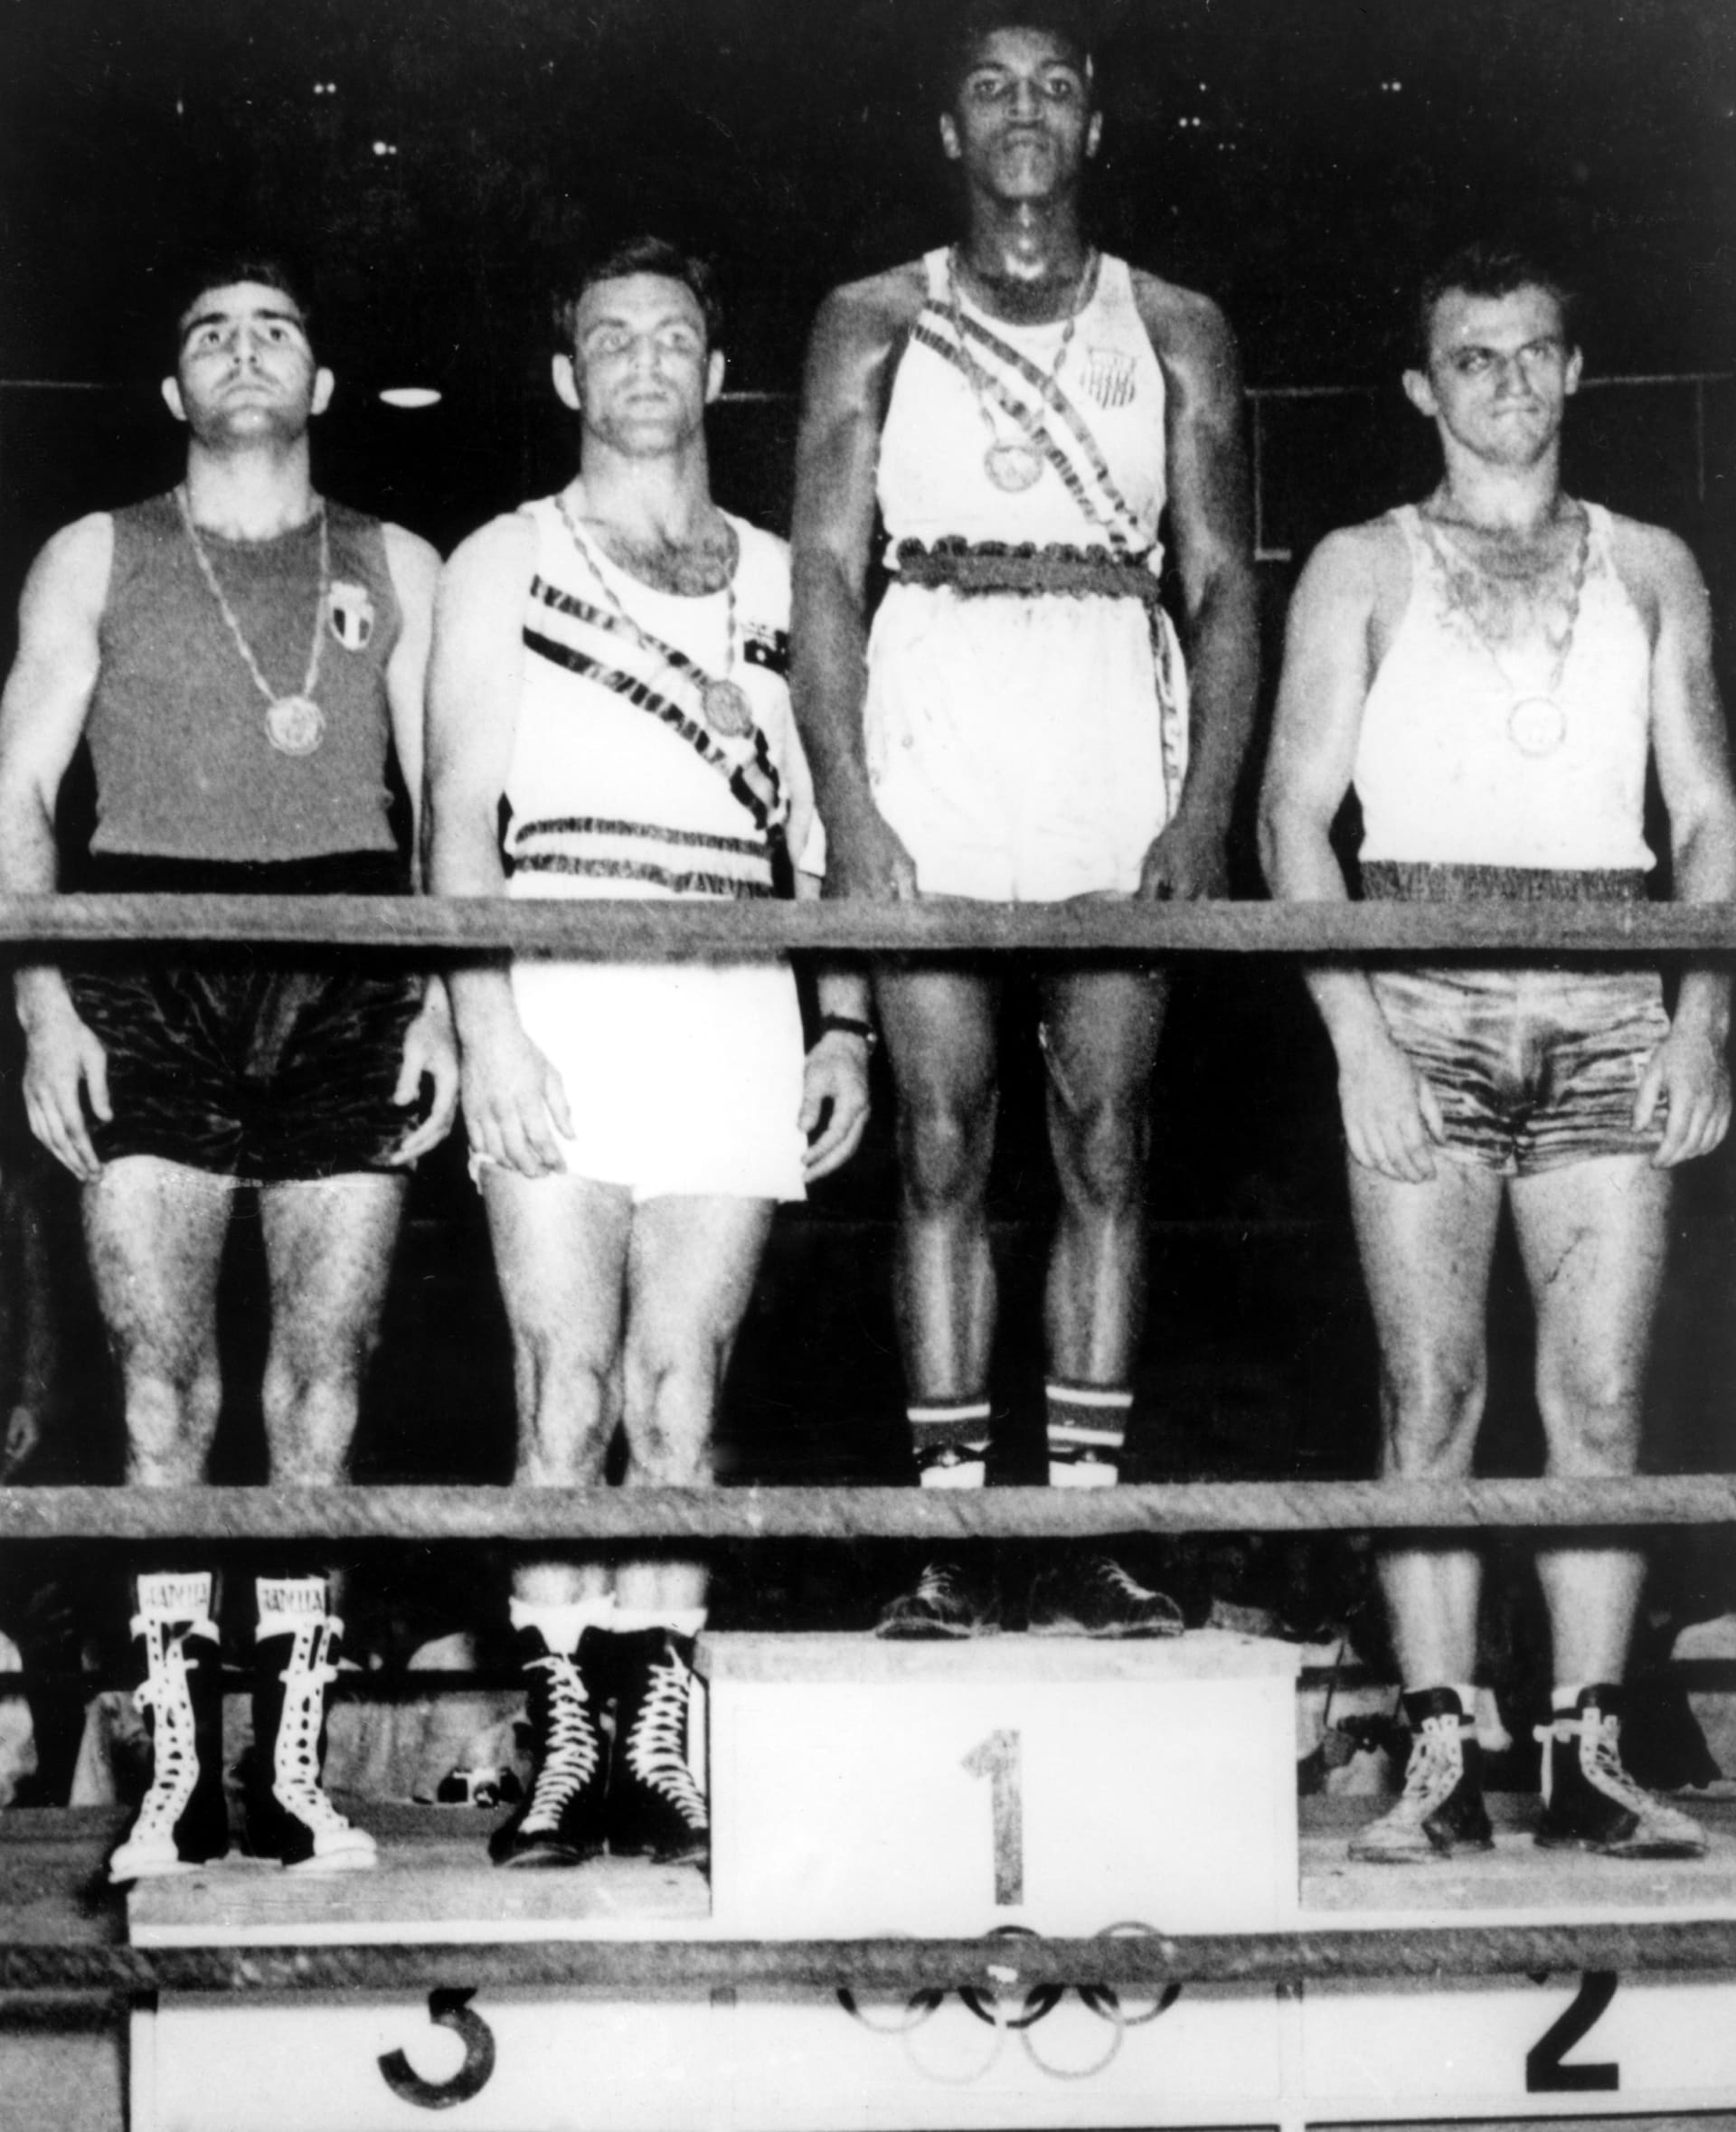 Muhammad Ali, tenkrát ještě jako Cassius Clay, vybojoval olympijské zlato v Římě v roce 1960.